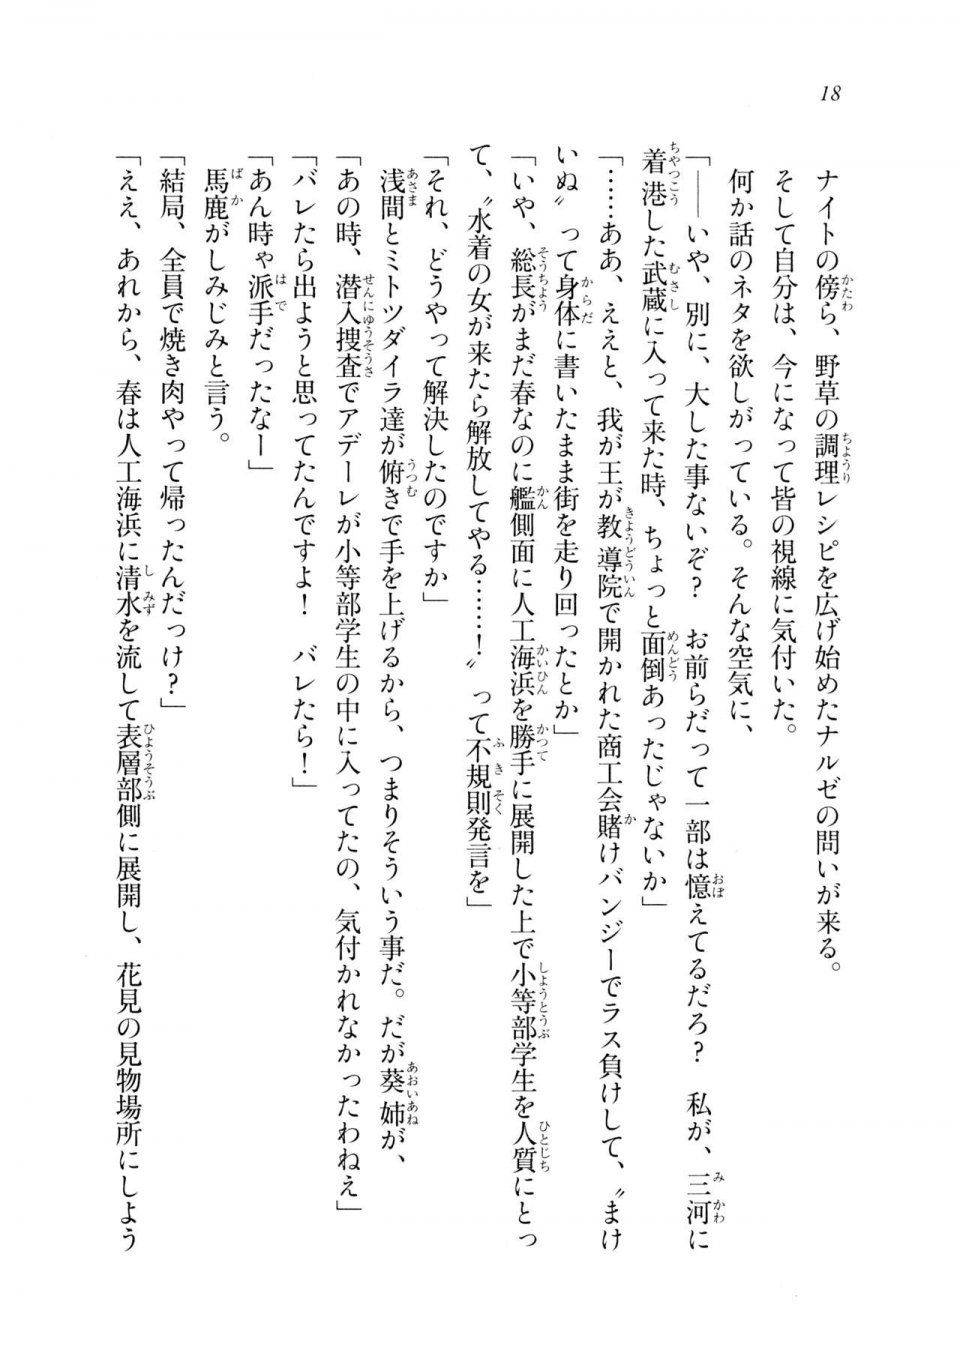 Kyoukai Senjou no Horizon LN Sidestory Vol 2 - Photo #17